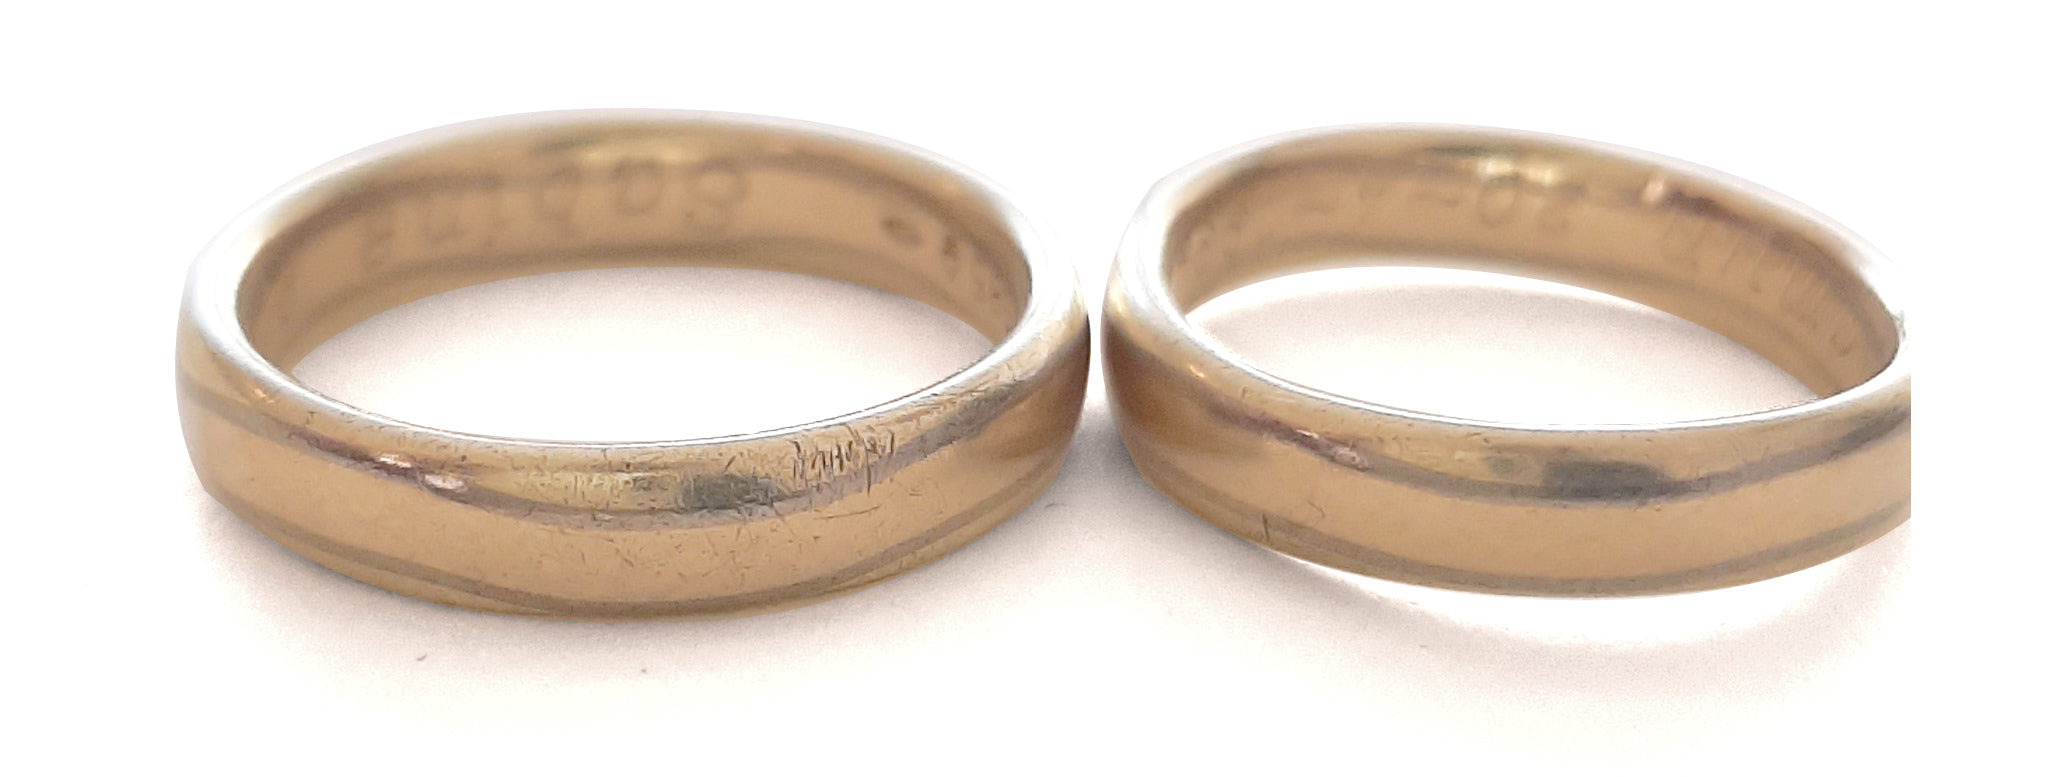 HerinneRing - ring gemaakt uit twee oude trouwringen